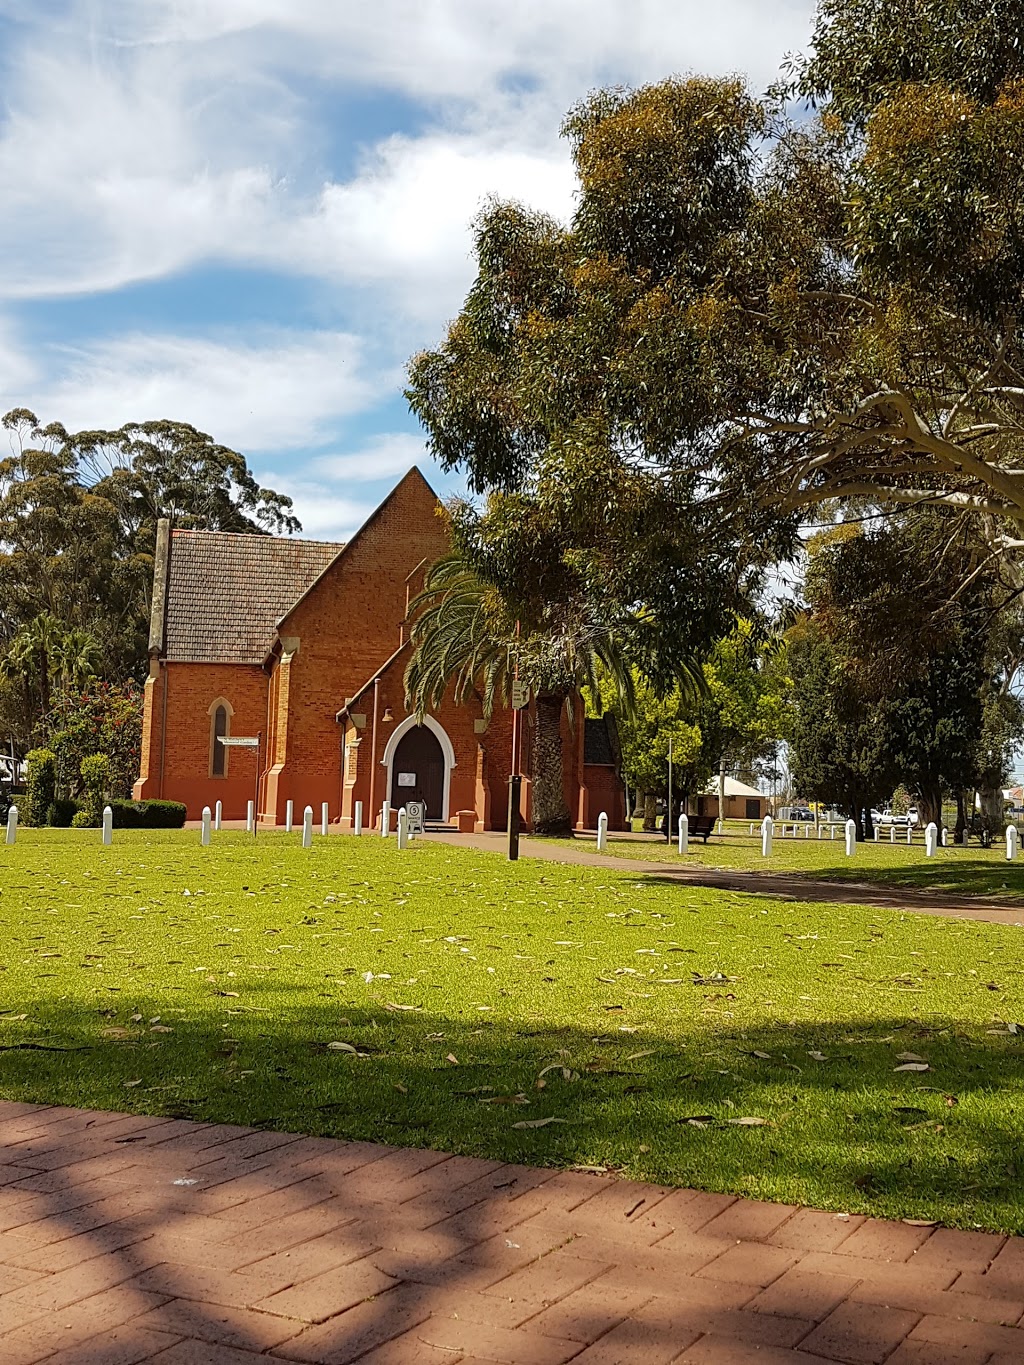 Stirling Square | park | Guildford WA 6055, Australia